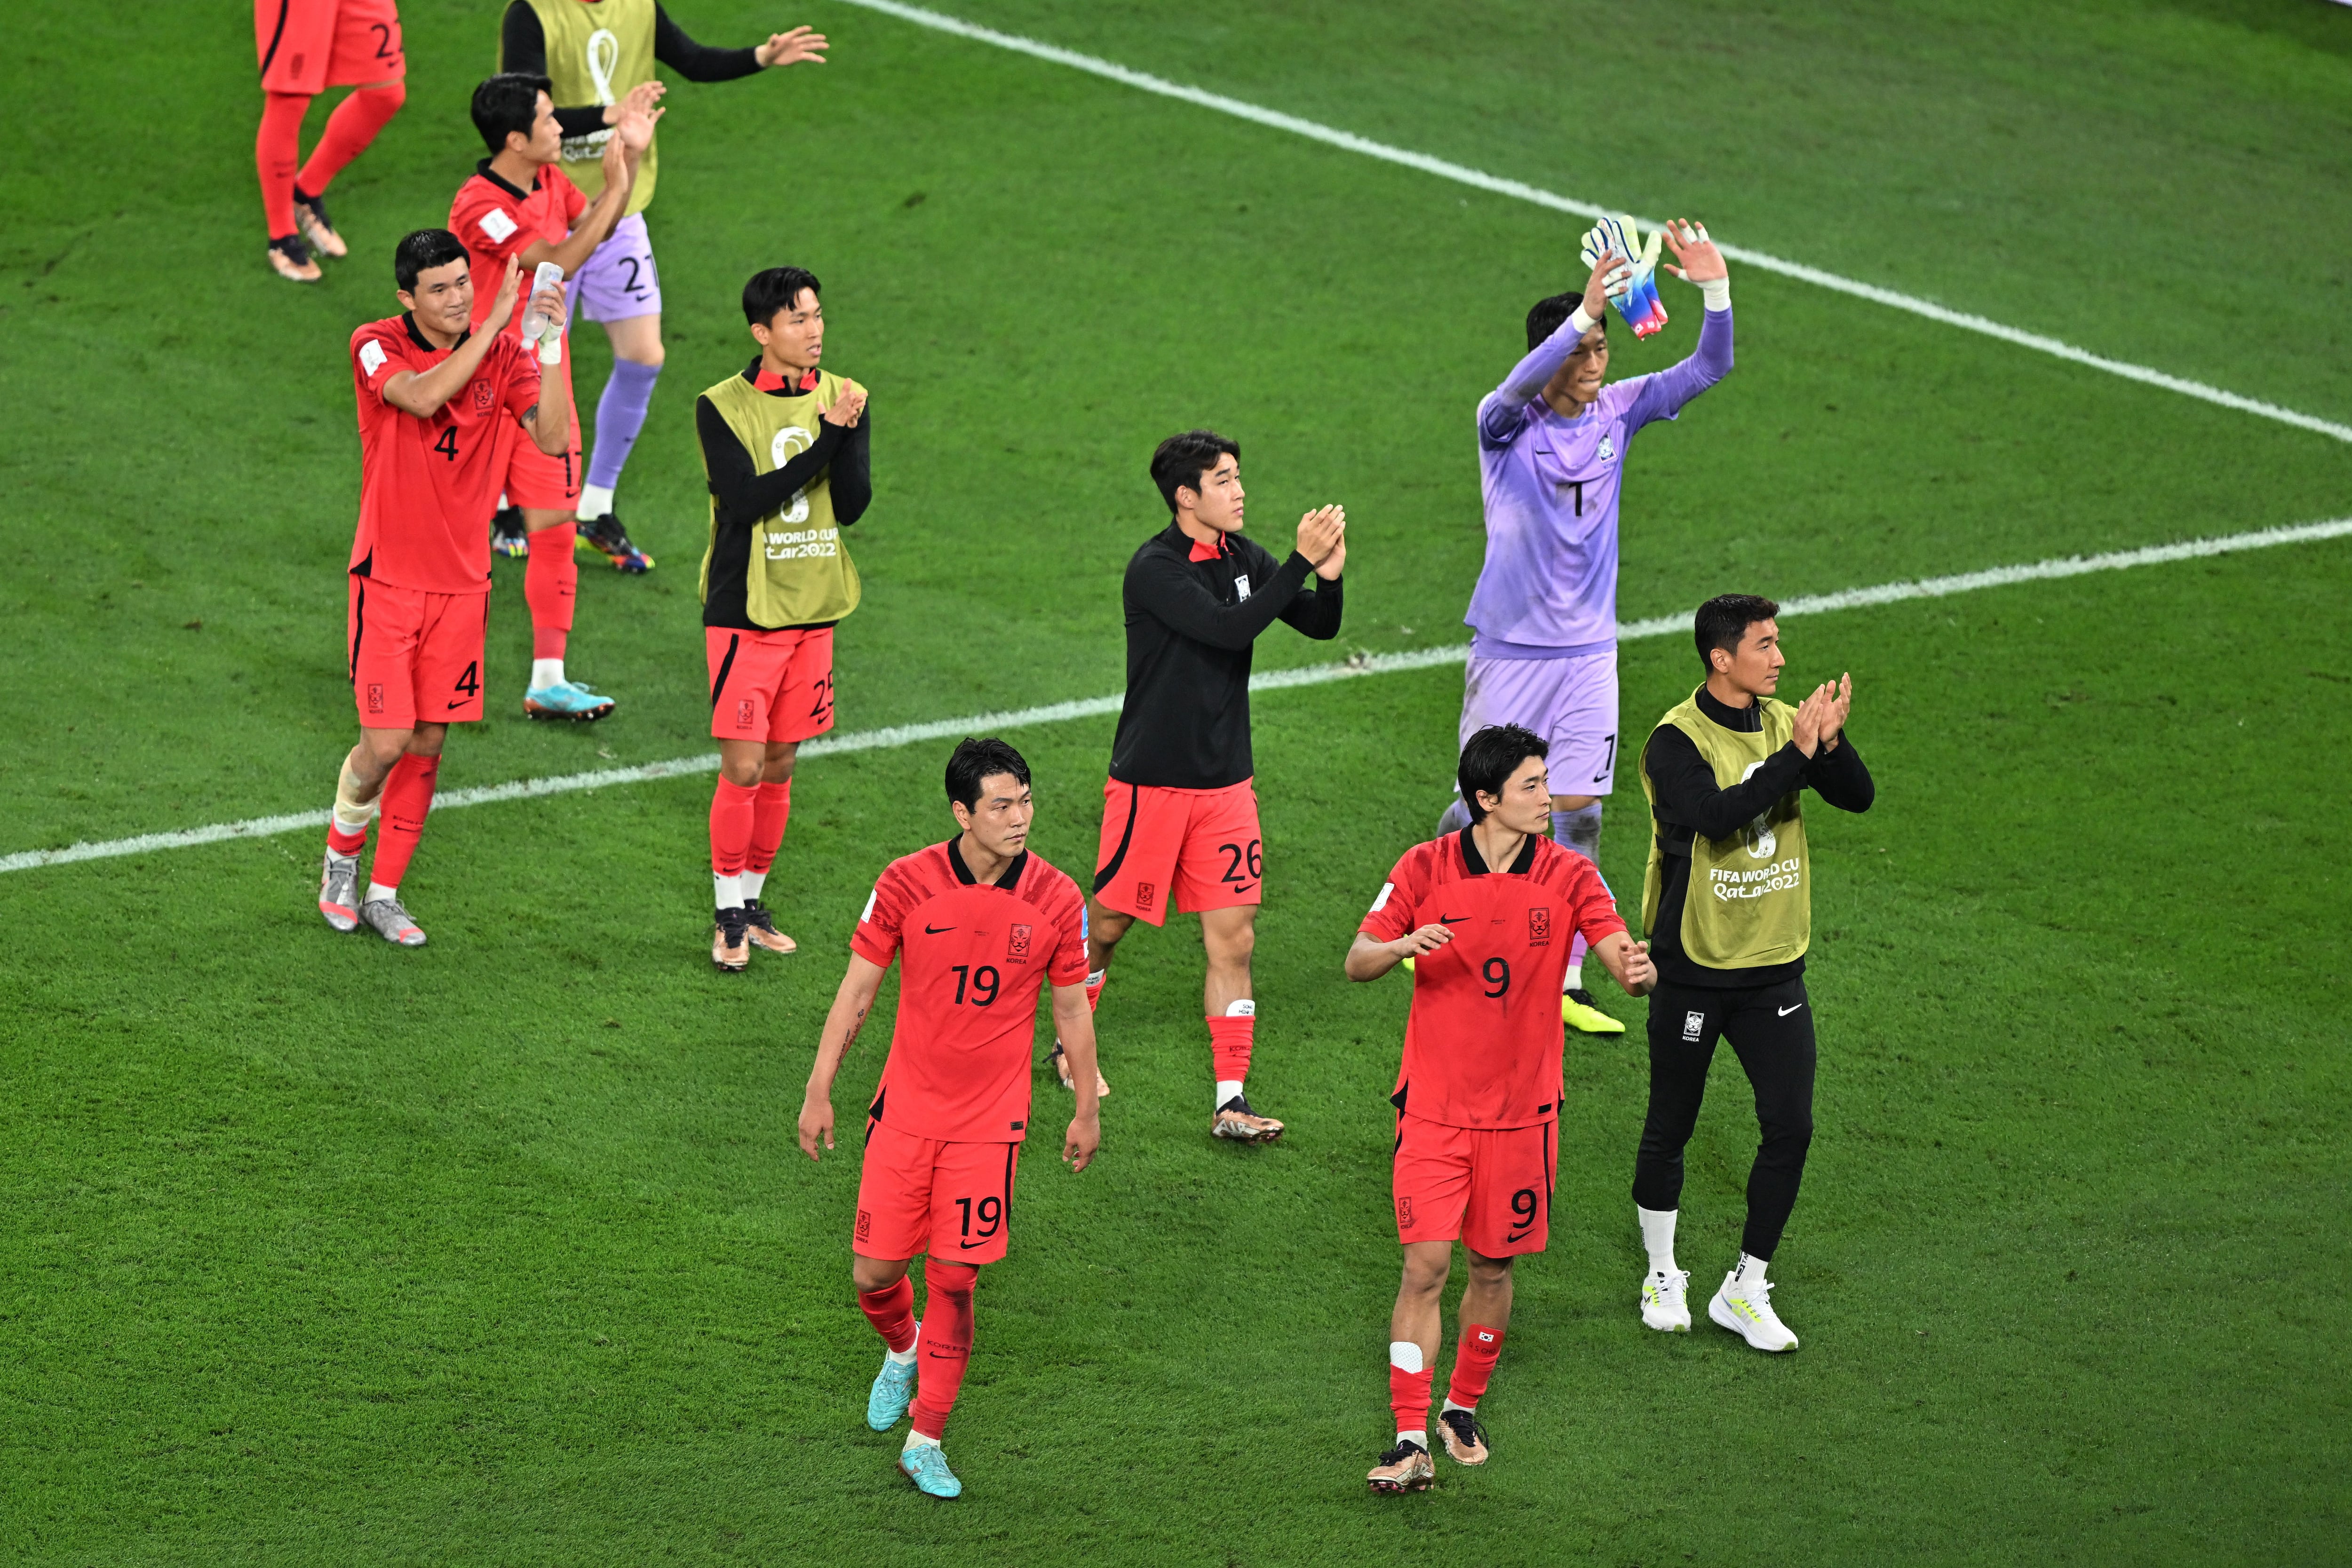 La televisión estatal de Corea del Norte transmitió por primera vez un partido de fútbol de Corea del Sur, fue el que perdió 4-1 ante Brasil